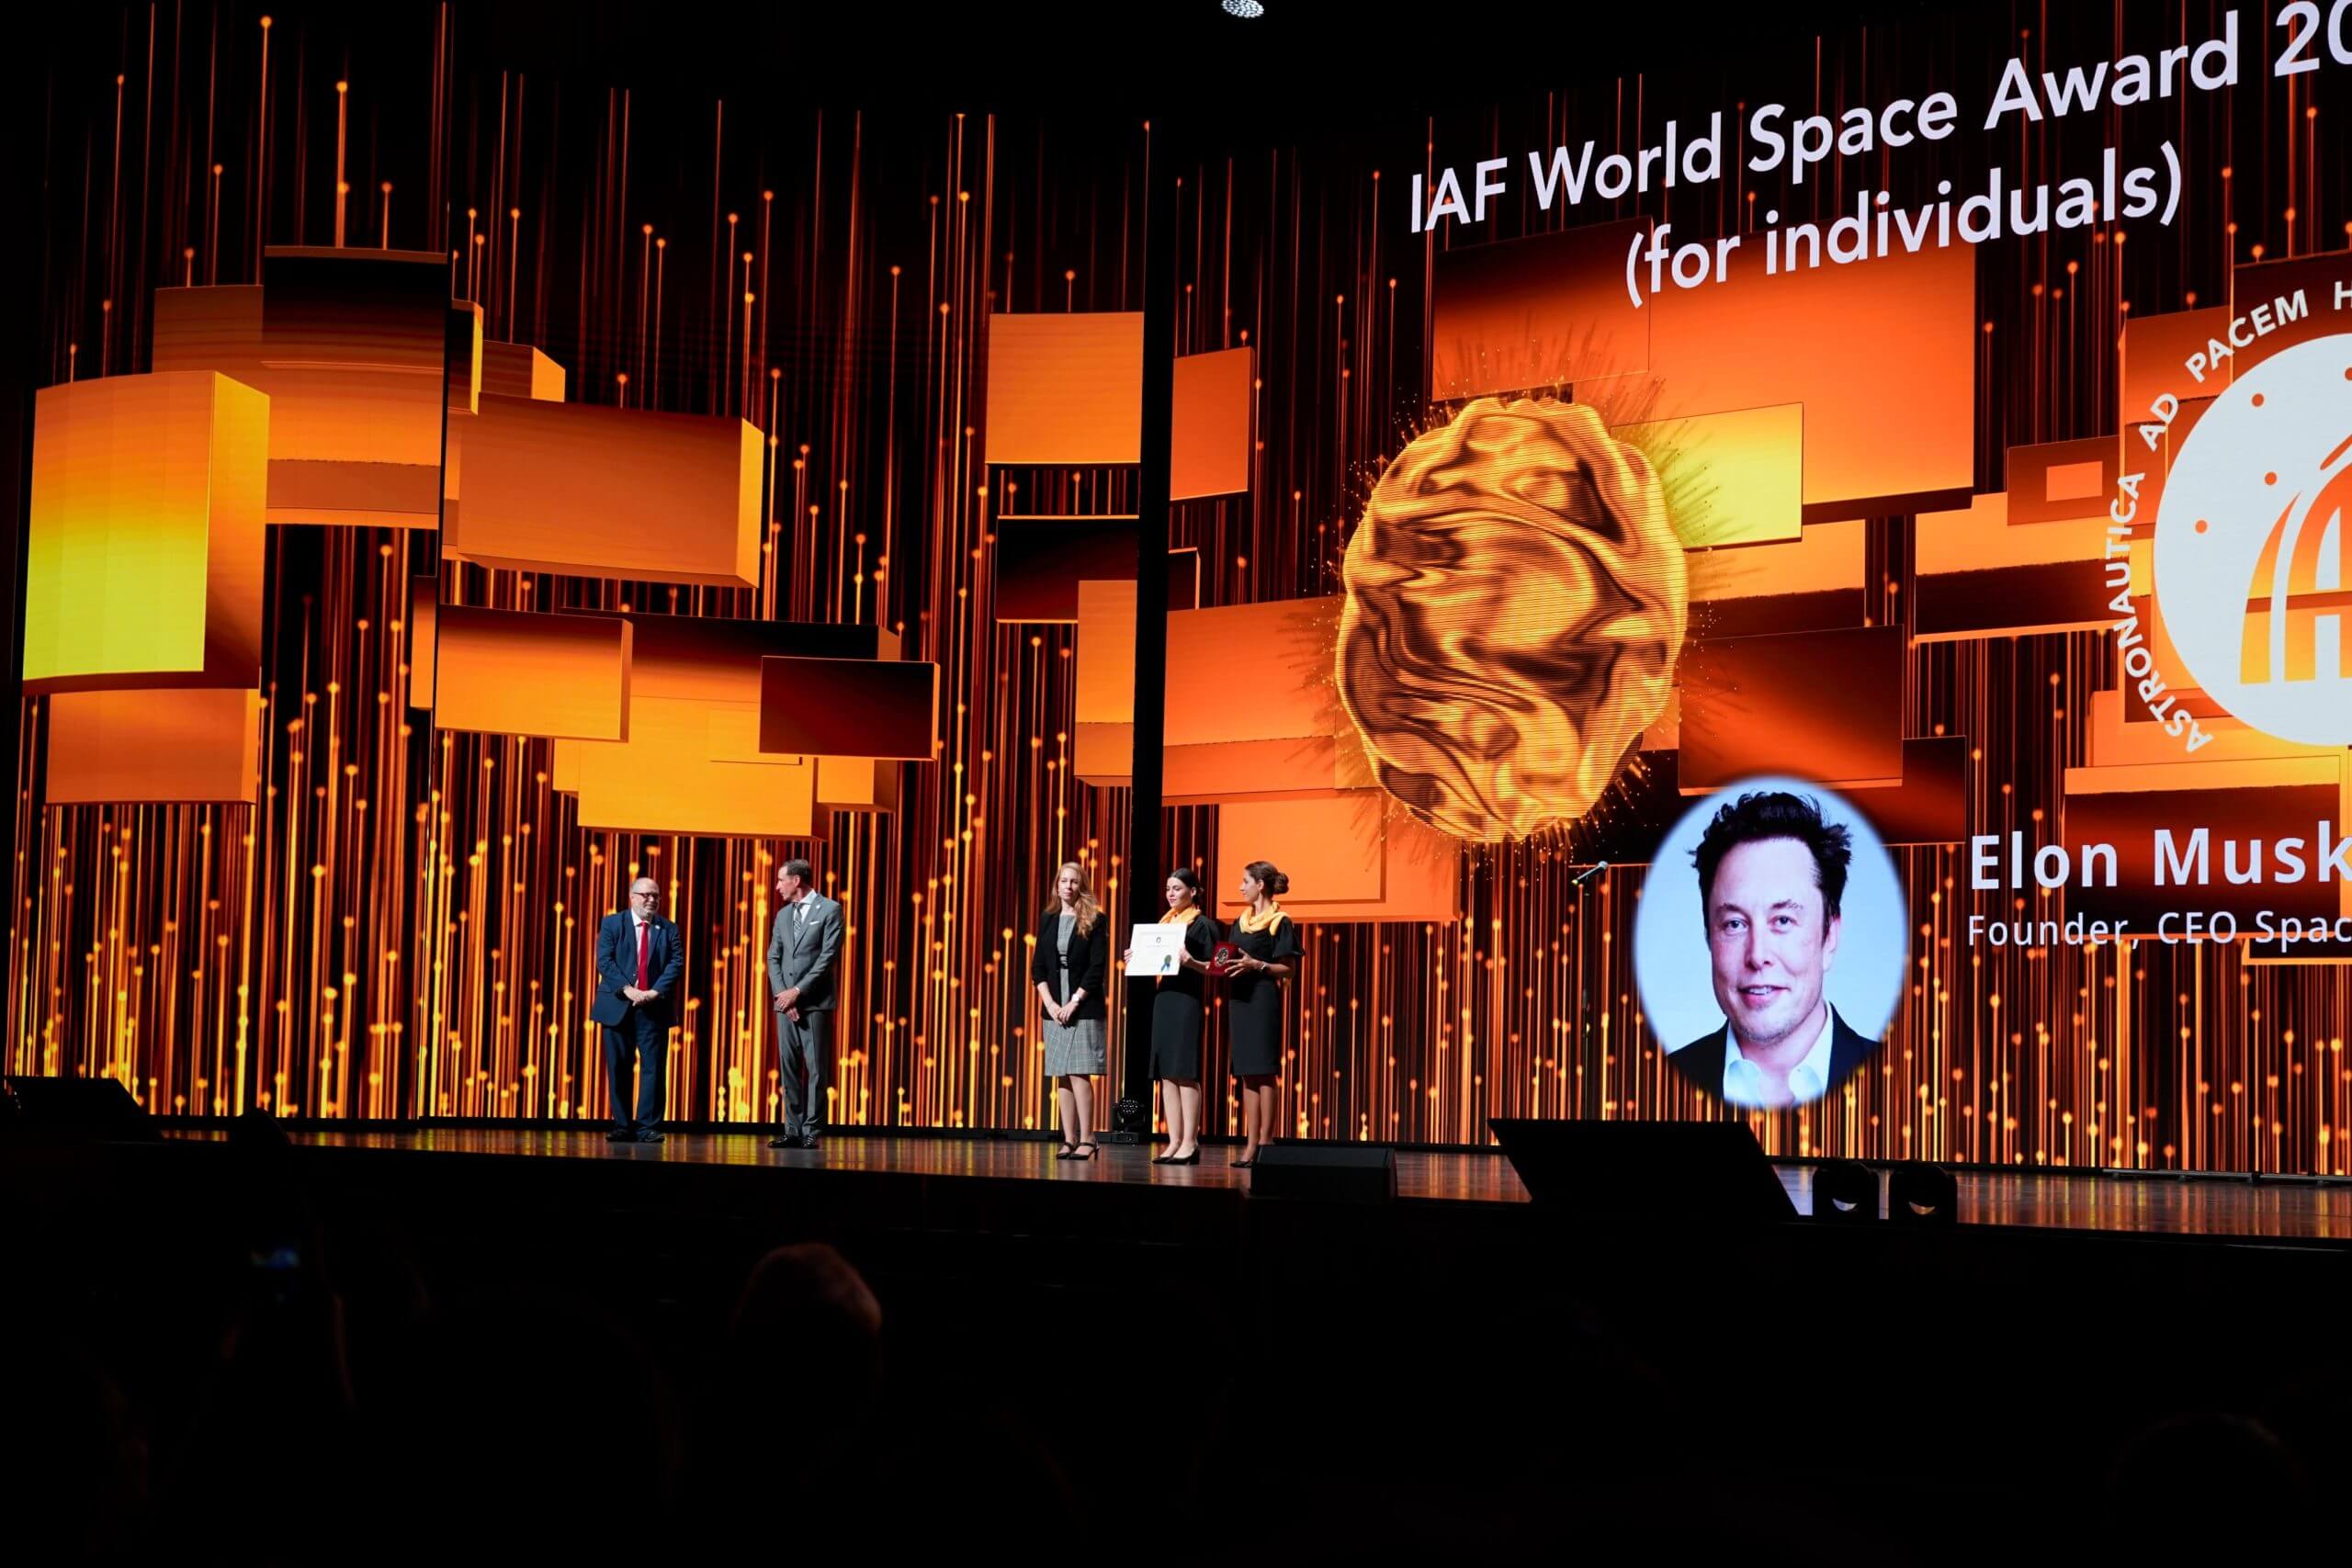 SpaceX’ten Elon Musk, 74. Uluslararası Uzay Kongresi’nde IAF Dünya Uzay Ödülünü kazandı